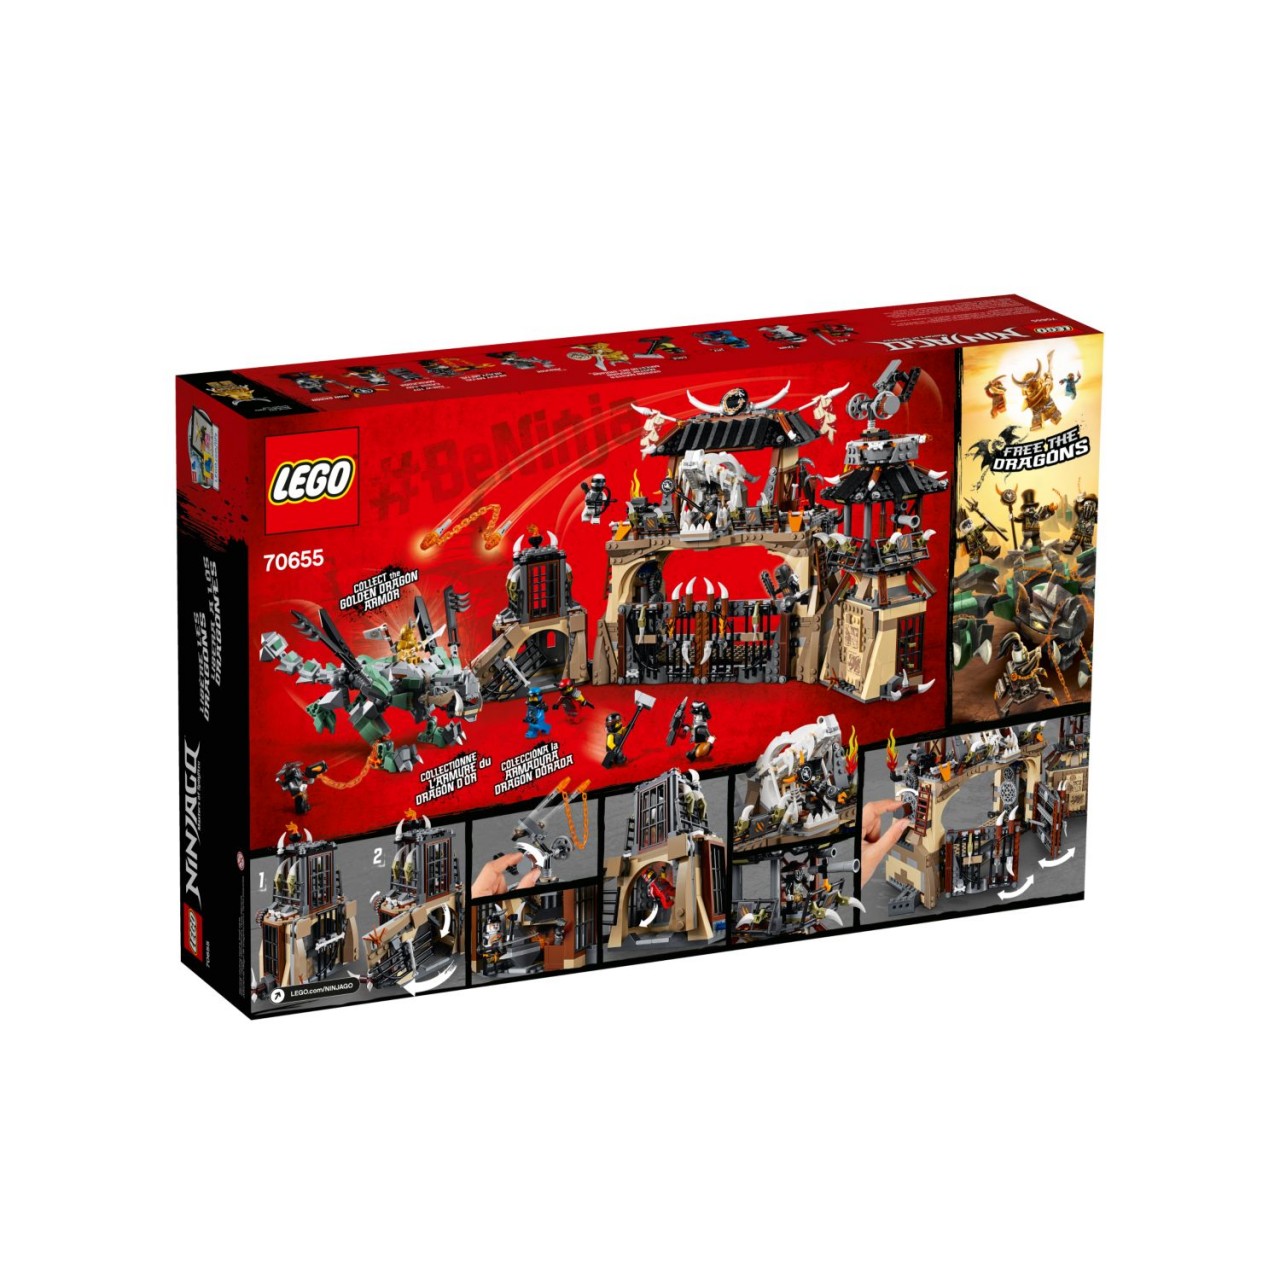 LEGO NINJAGO 70655 Drachengrube